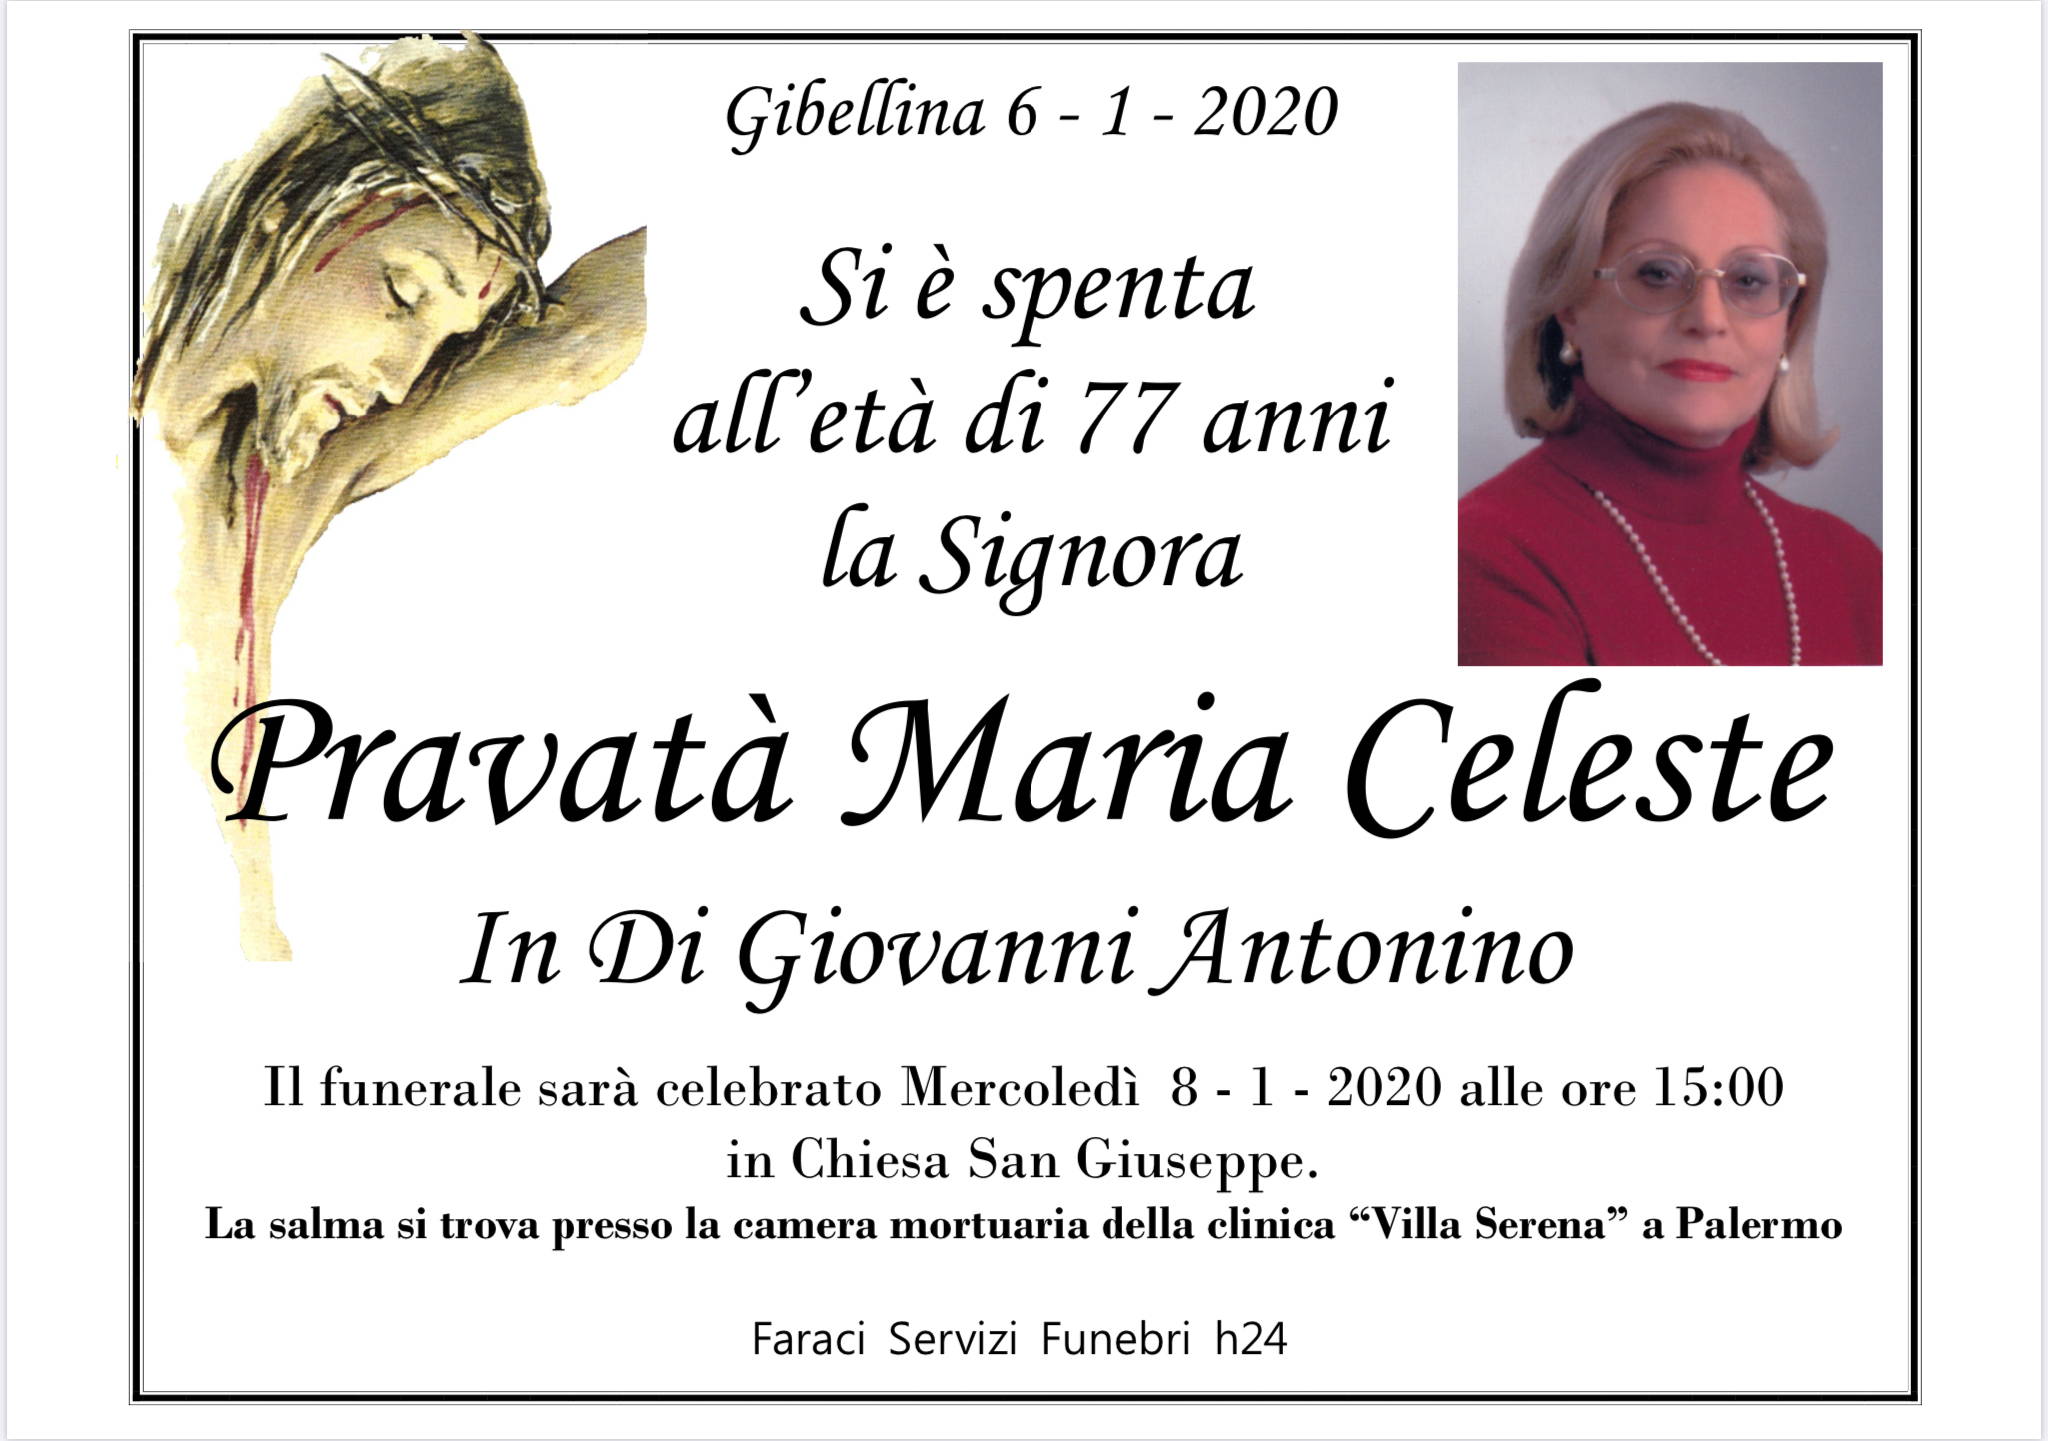 Maria Celeste Pravatà